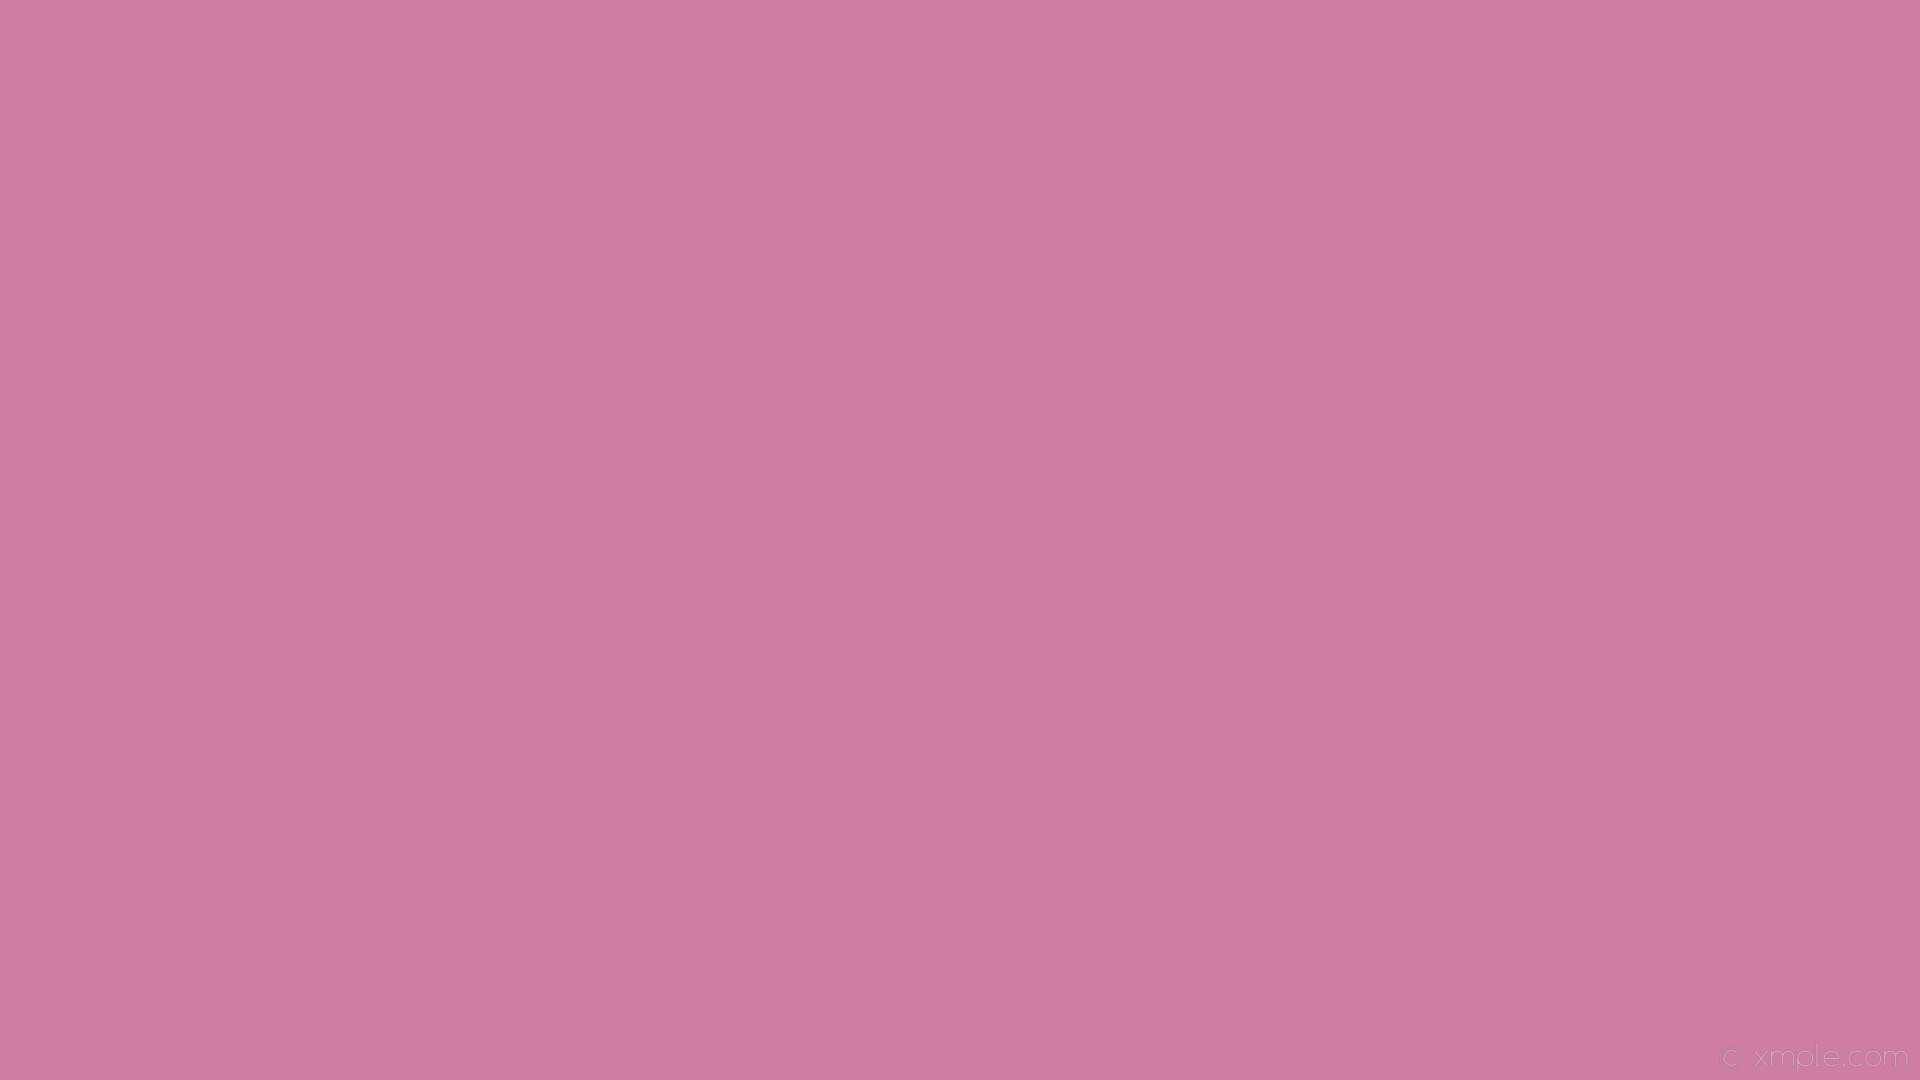 無地のピンクの壁紙,ピンク,赤,バイオレット,紫の,ライラック